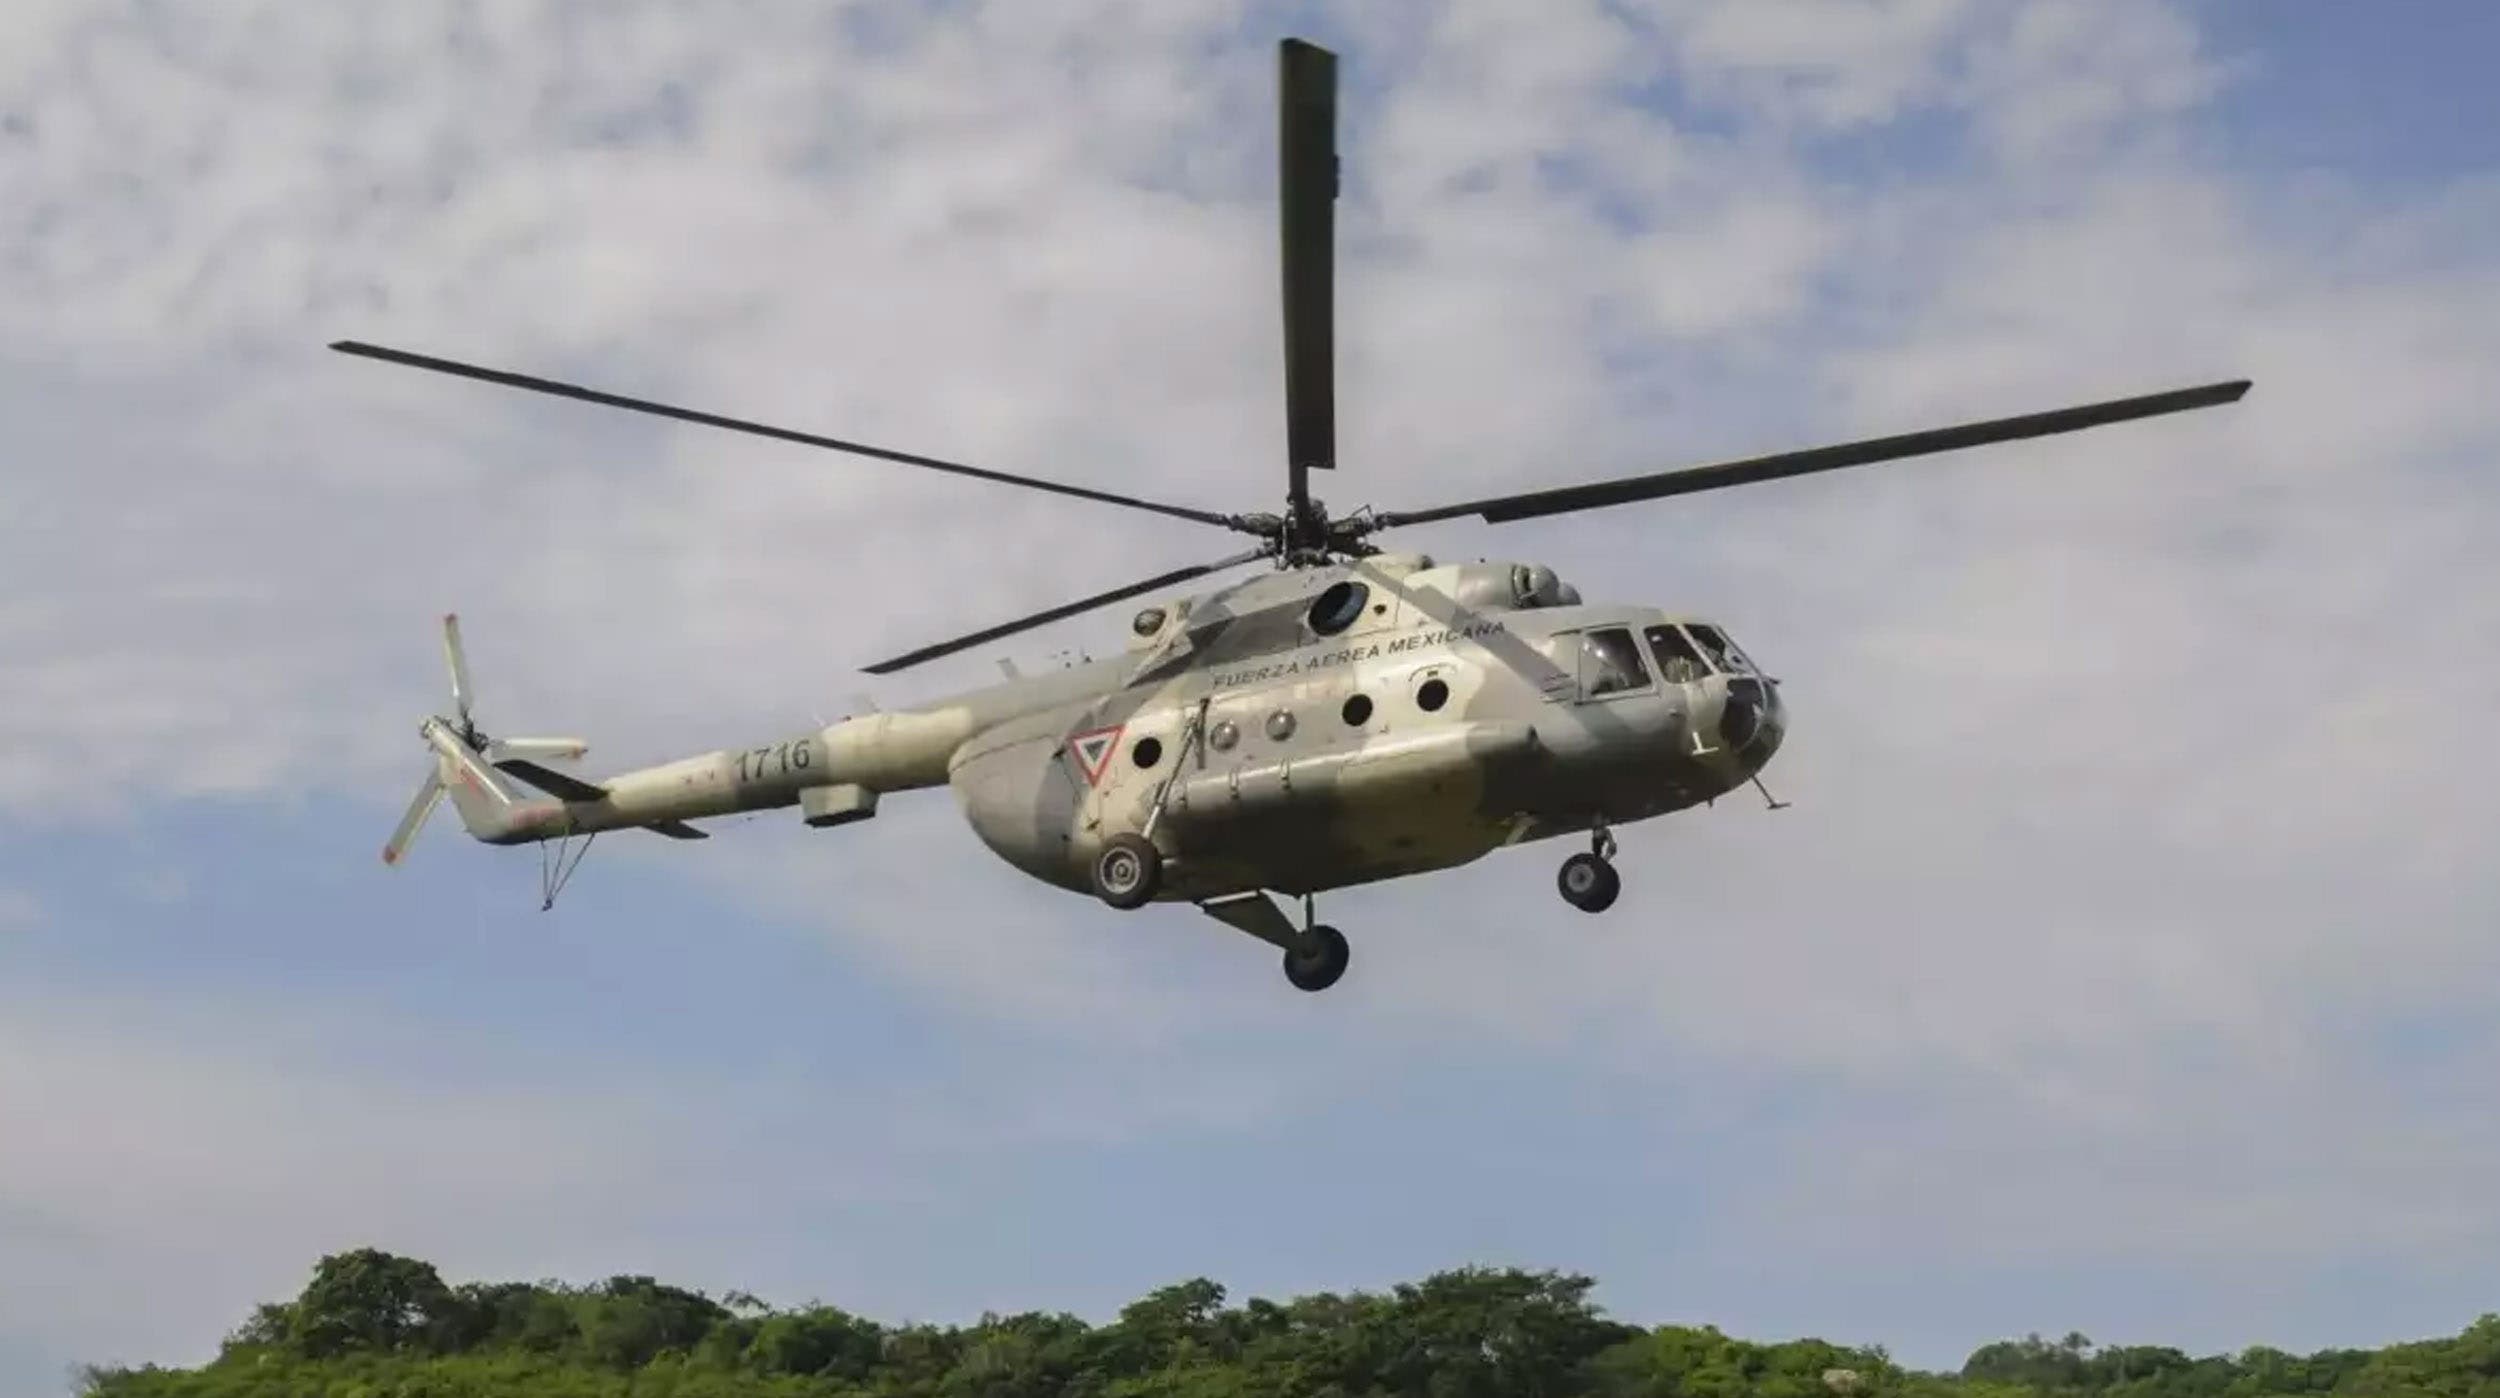 Helicóptero de la Sedena se desploma, dejando tres personas fallecidas